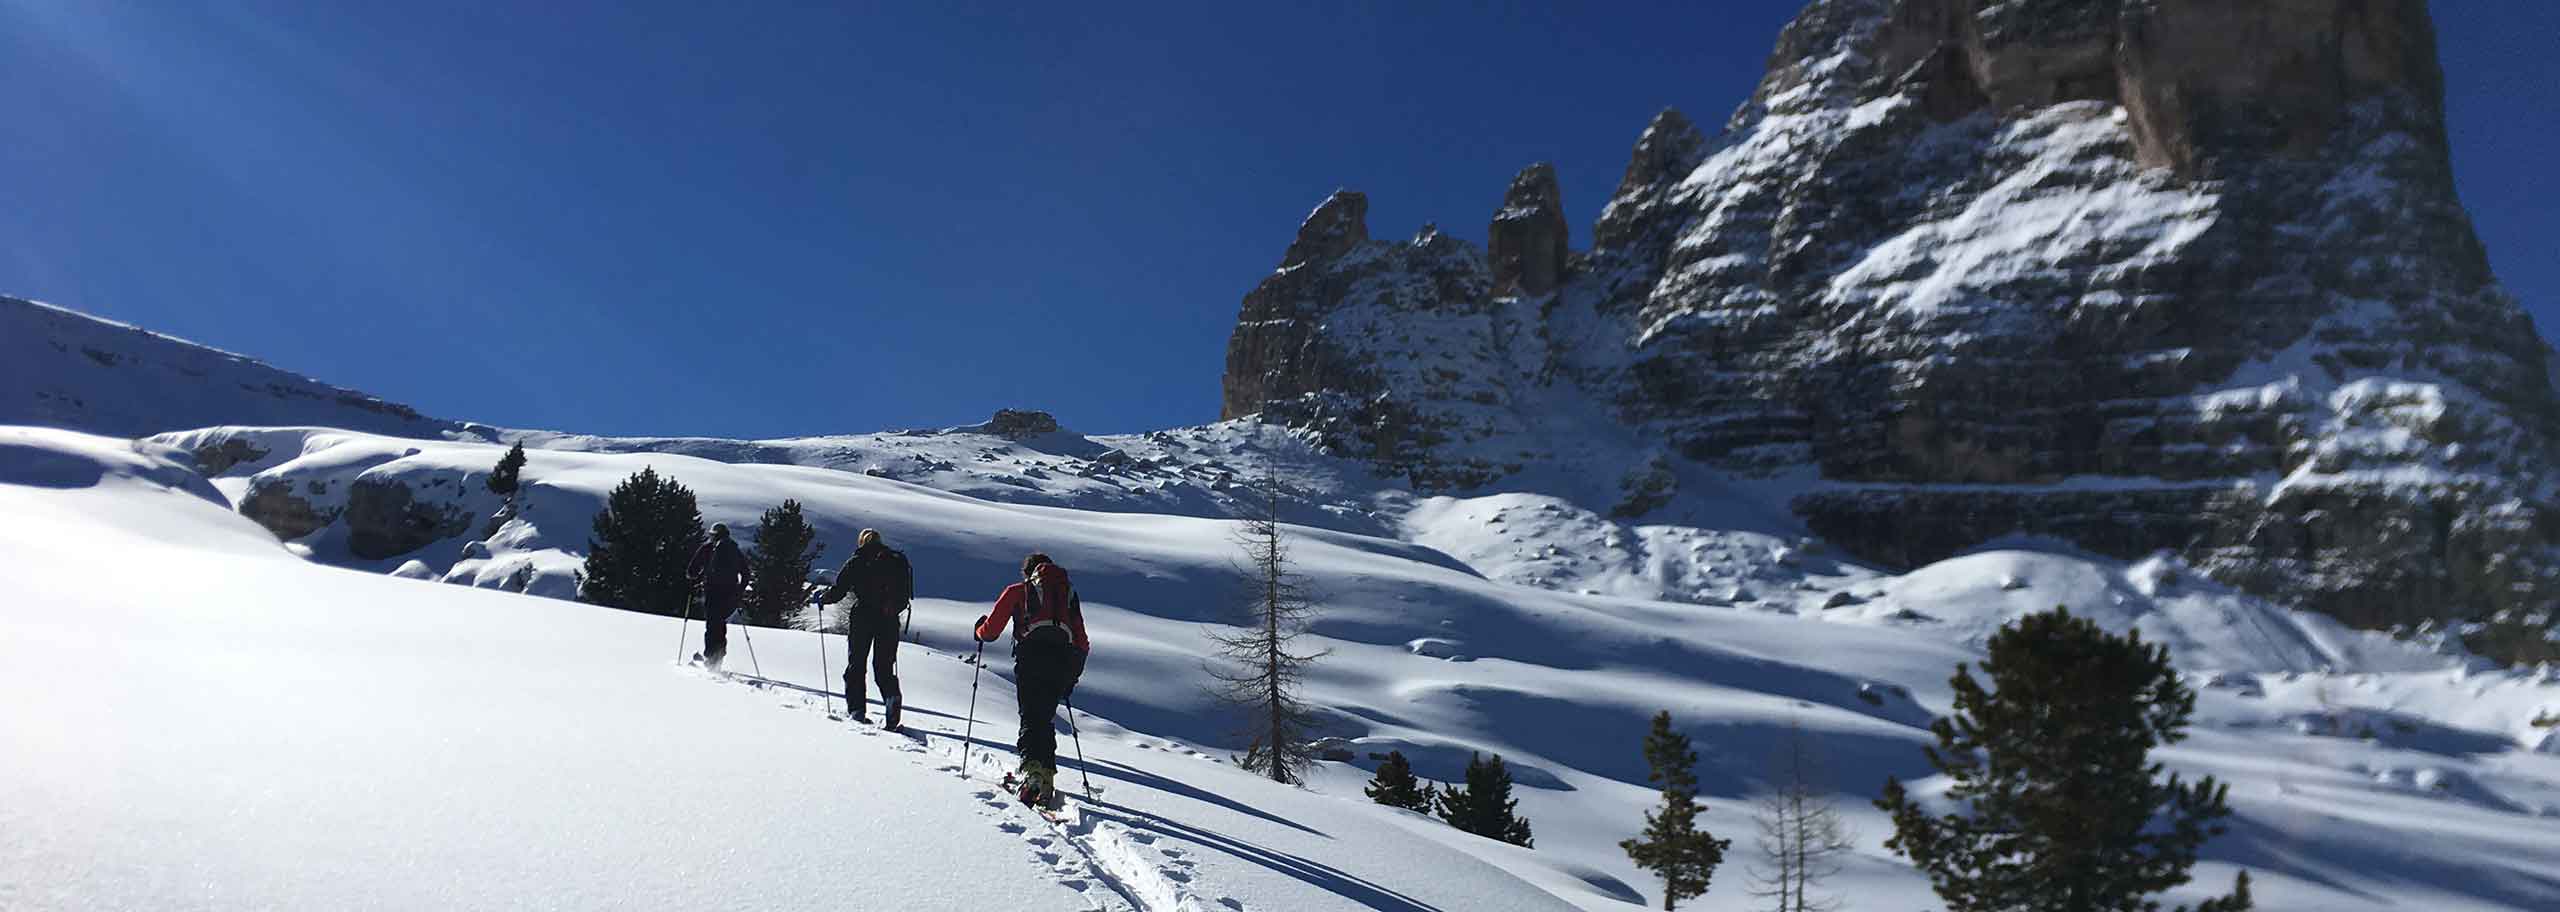 Sci Alpinismo a Cortina d'Ampezzo, Escursioni e Corsi Sci Alpinistici